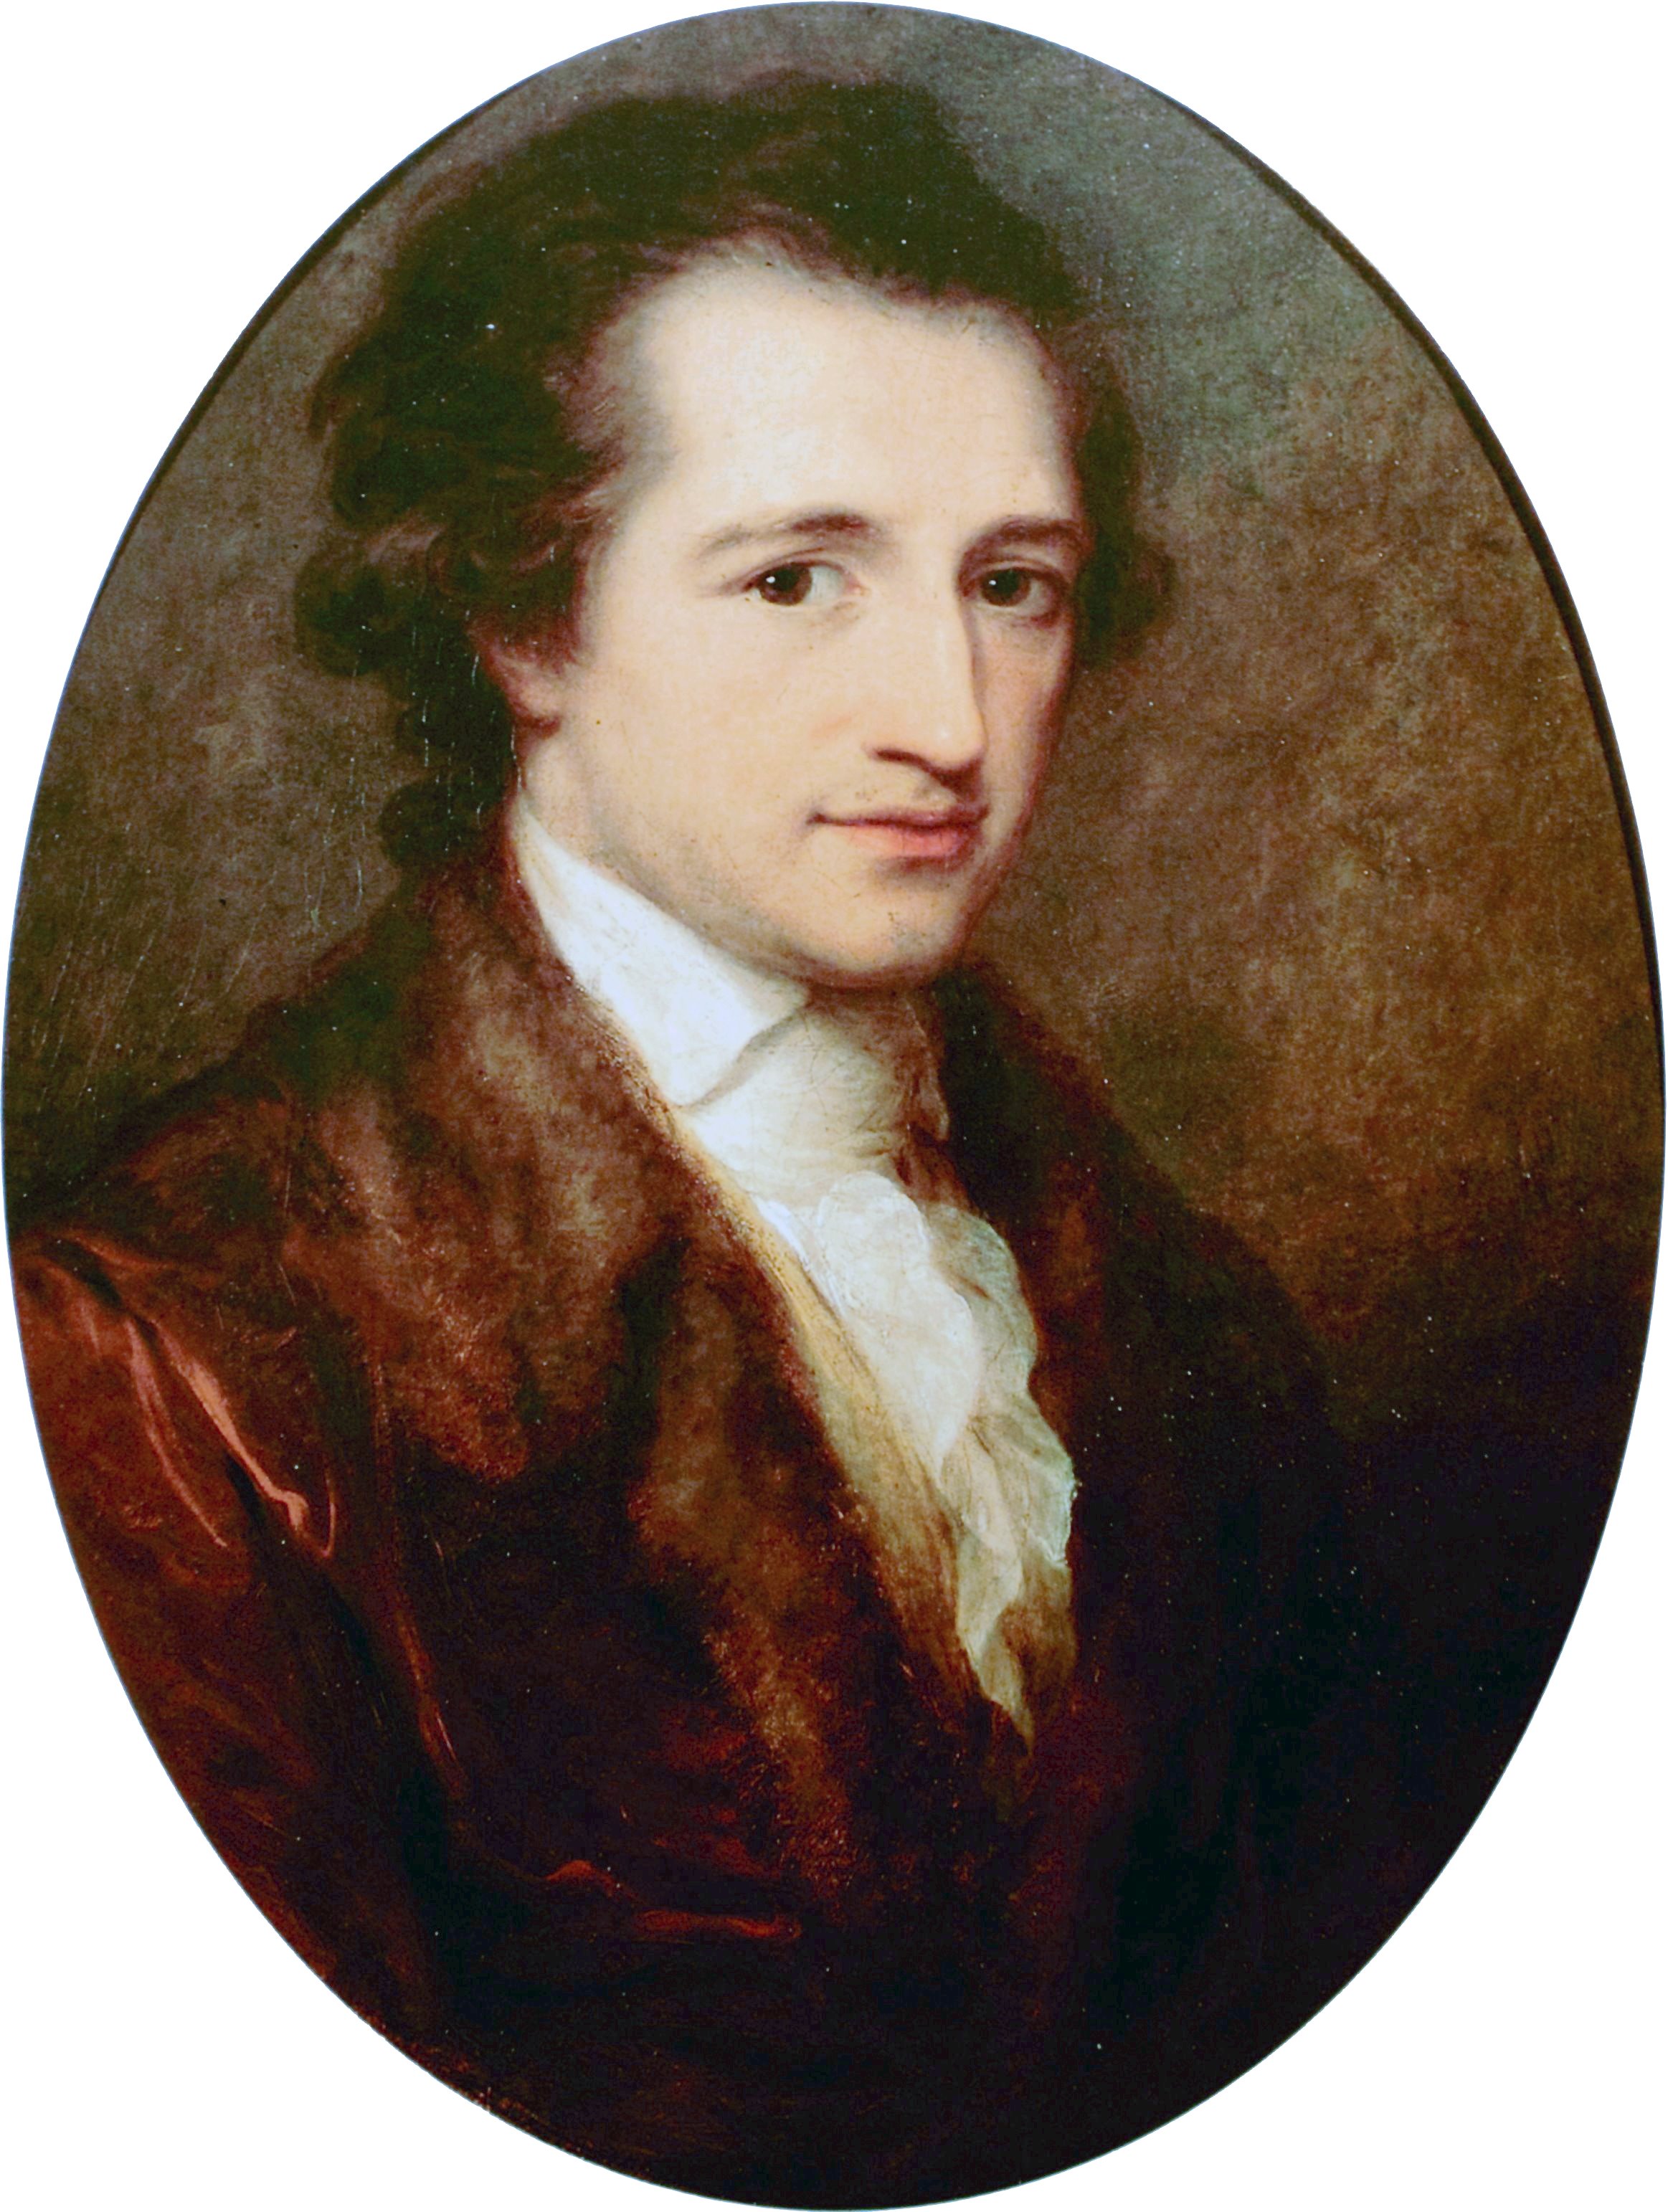 File:Der junge Goethe, gemalt von Angelica Kauffmann 1787.JPG